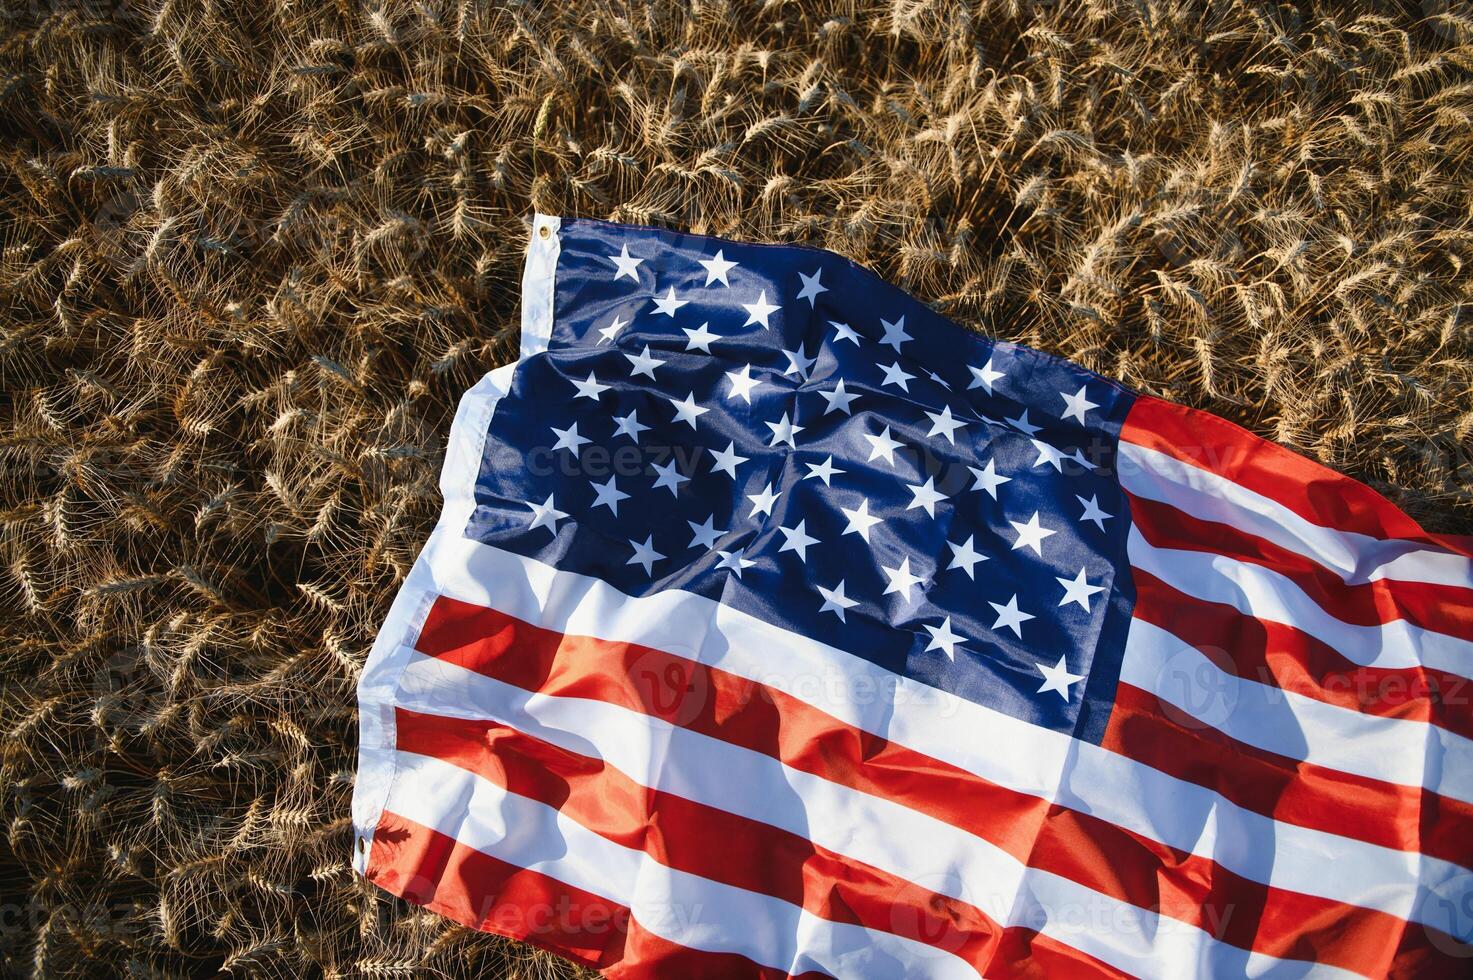 EUA americano bandeira espalhado em a dourado trigo campo. foto